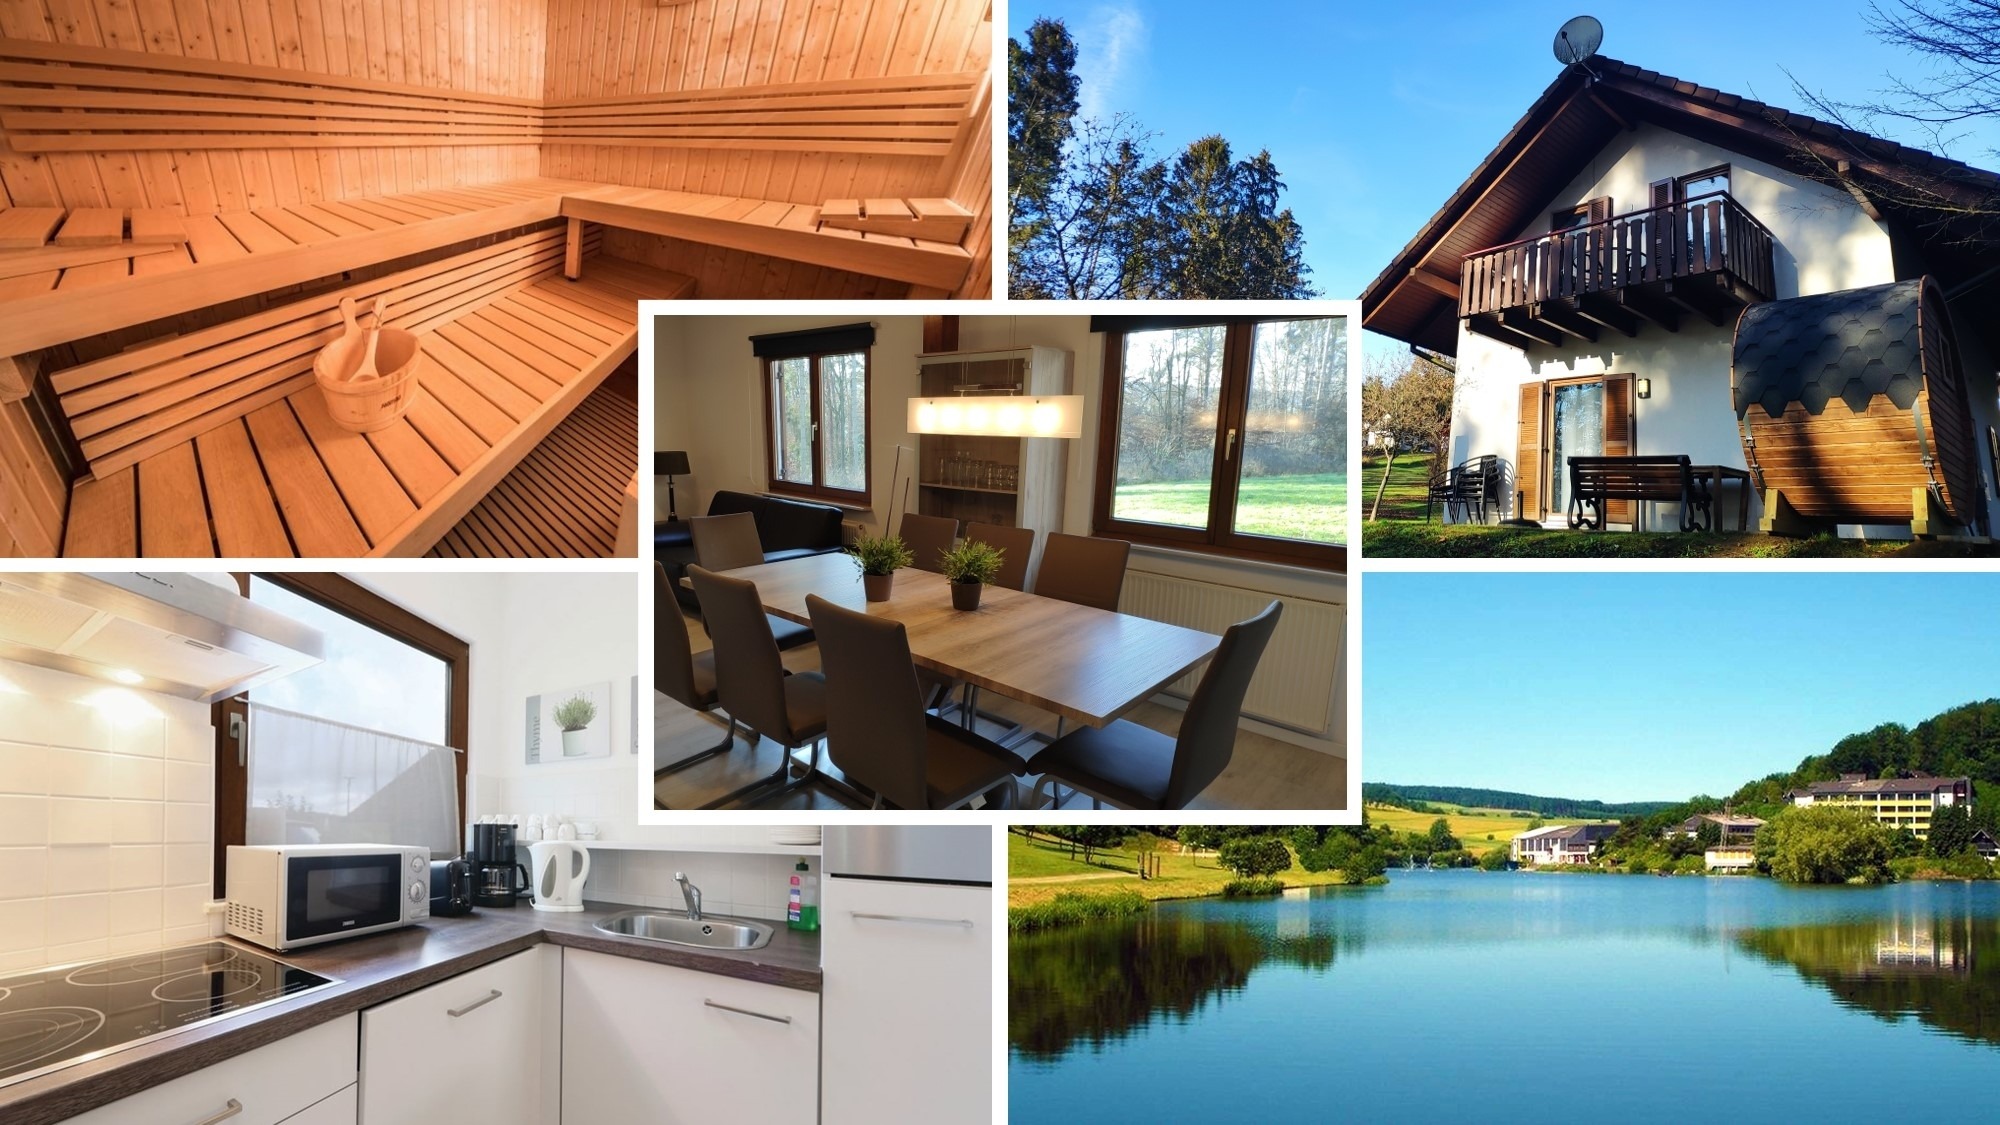 Ferienhaus Zeta mit Sauna, See, Wald und Ruhe Ferienhaus in Europa